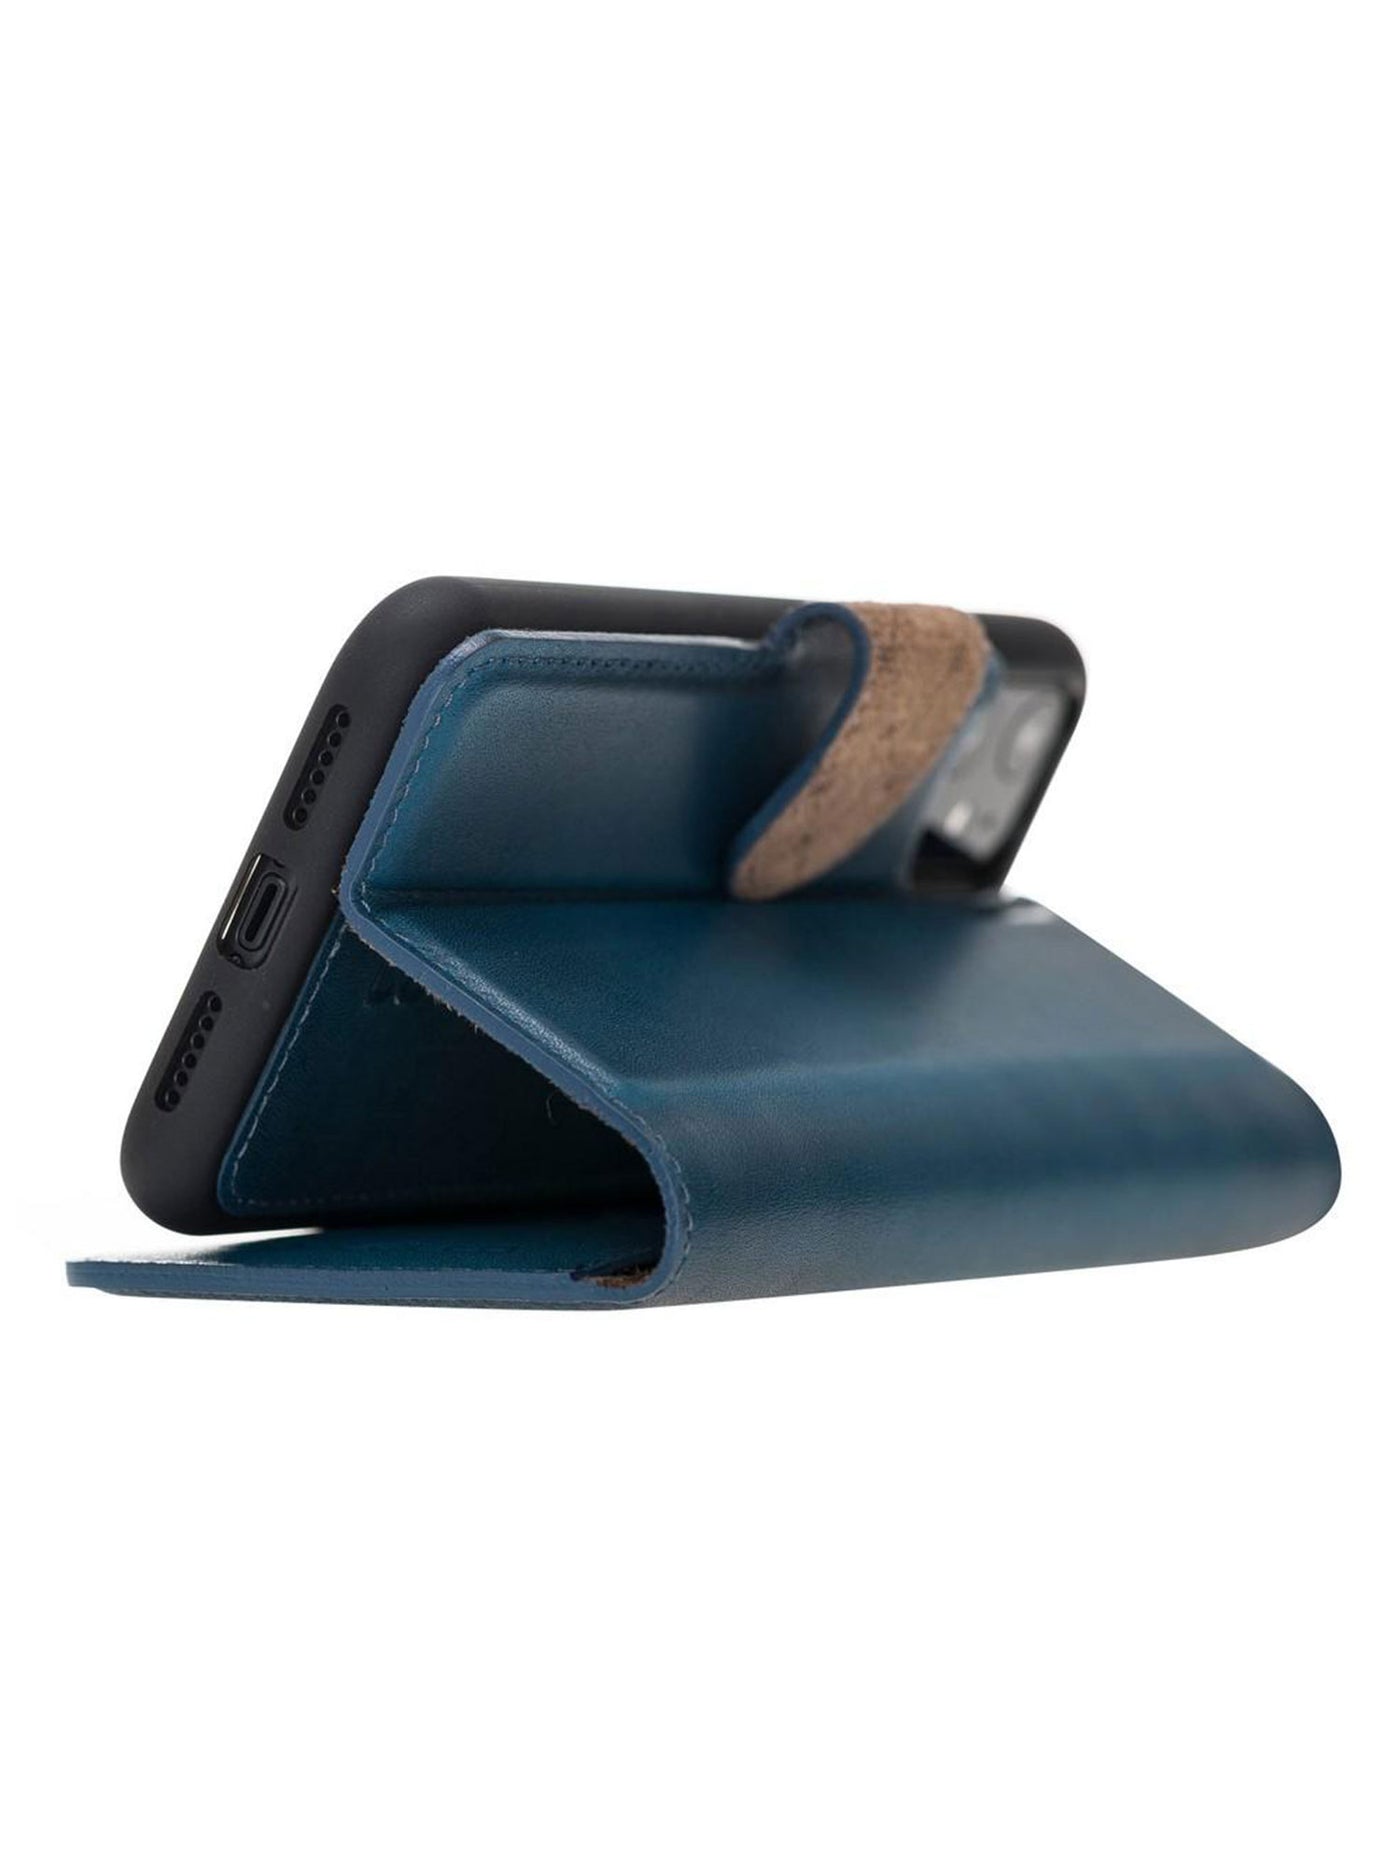 Plånboksfodral med avtagbart magnetskal i äkta läder för Apple iPhone 11 från Bouletta Alpina- Navy#color_navy